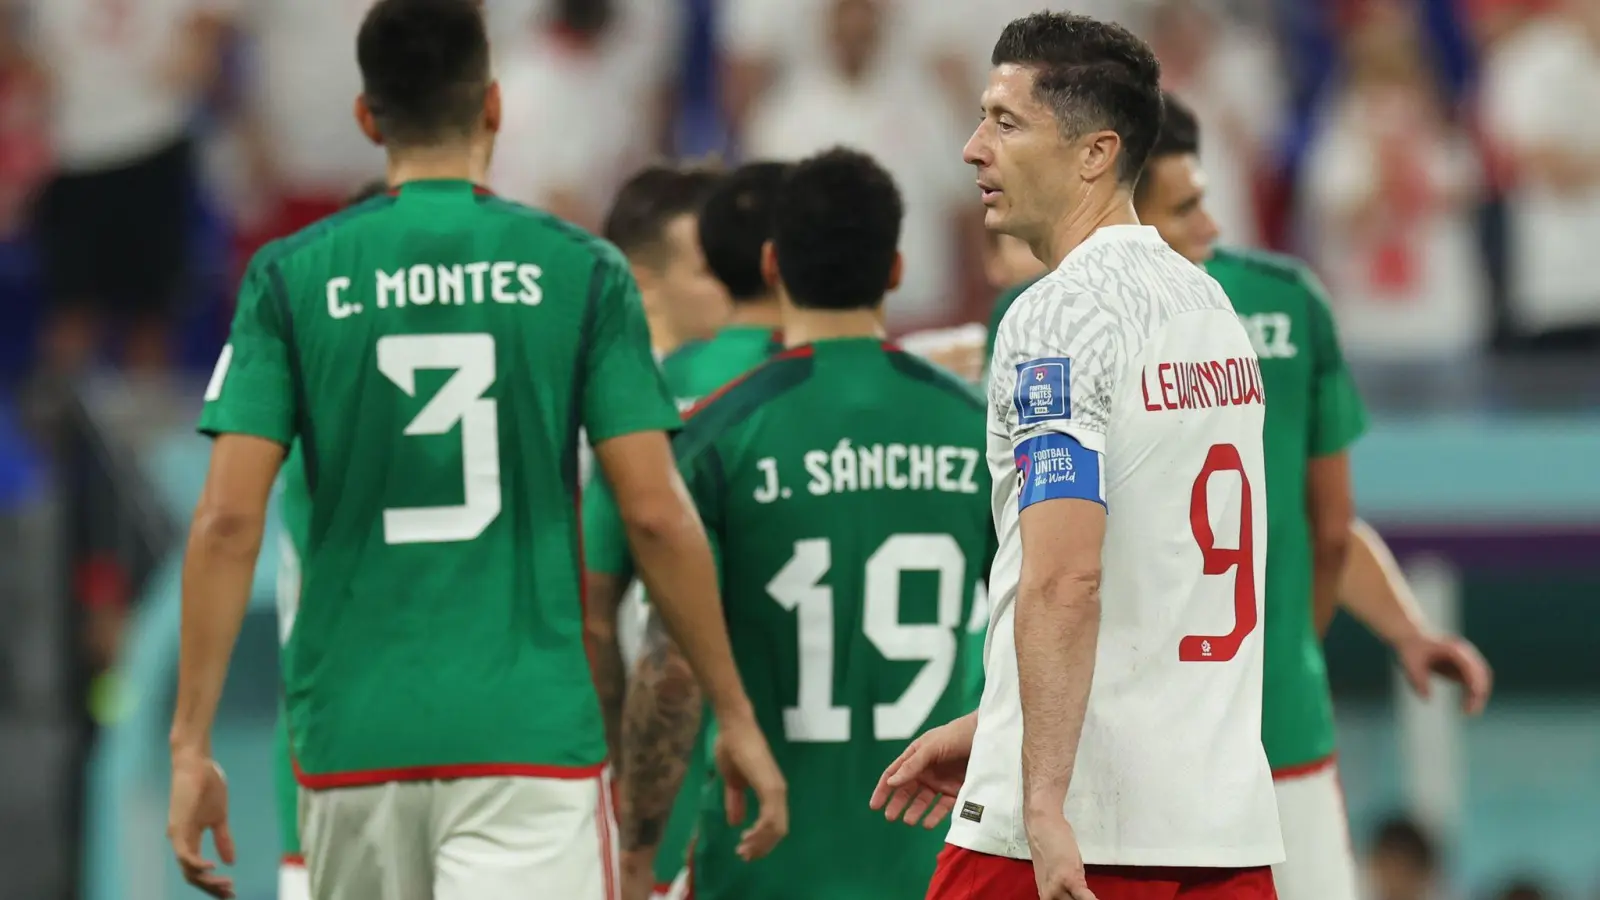 Robert Lewandowski kann den Elfmeter nicht verwandeln. Das Spiel gegen Mexiko endet torlos. (Foto: Christian Charisius/dpa)